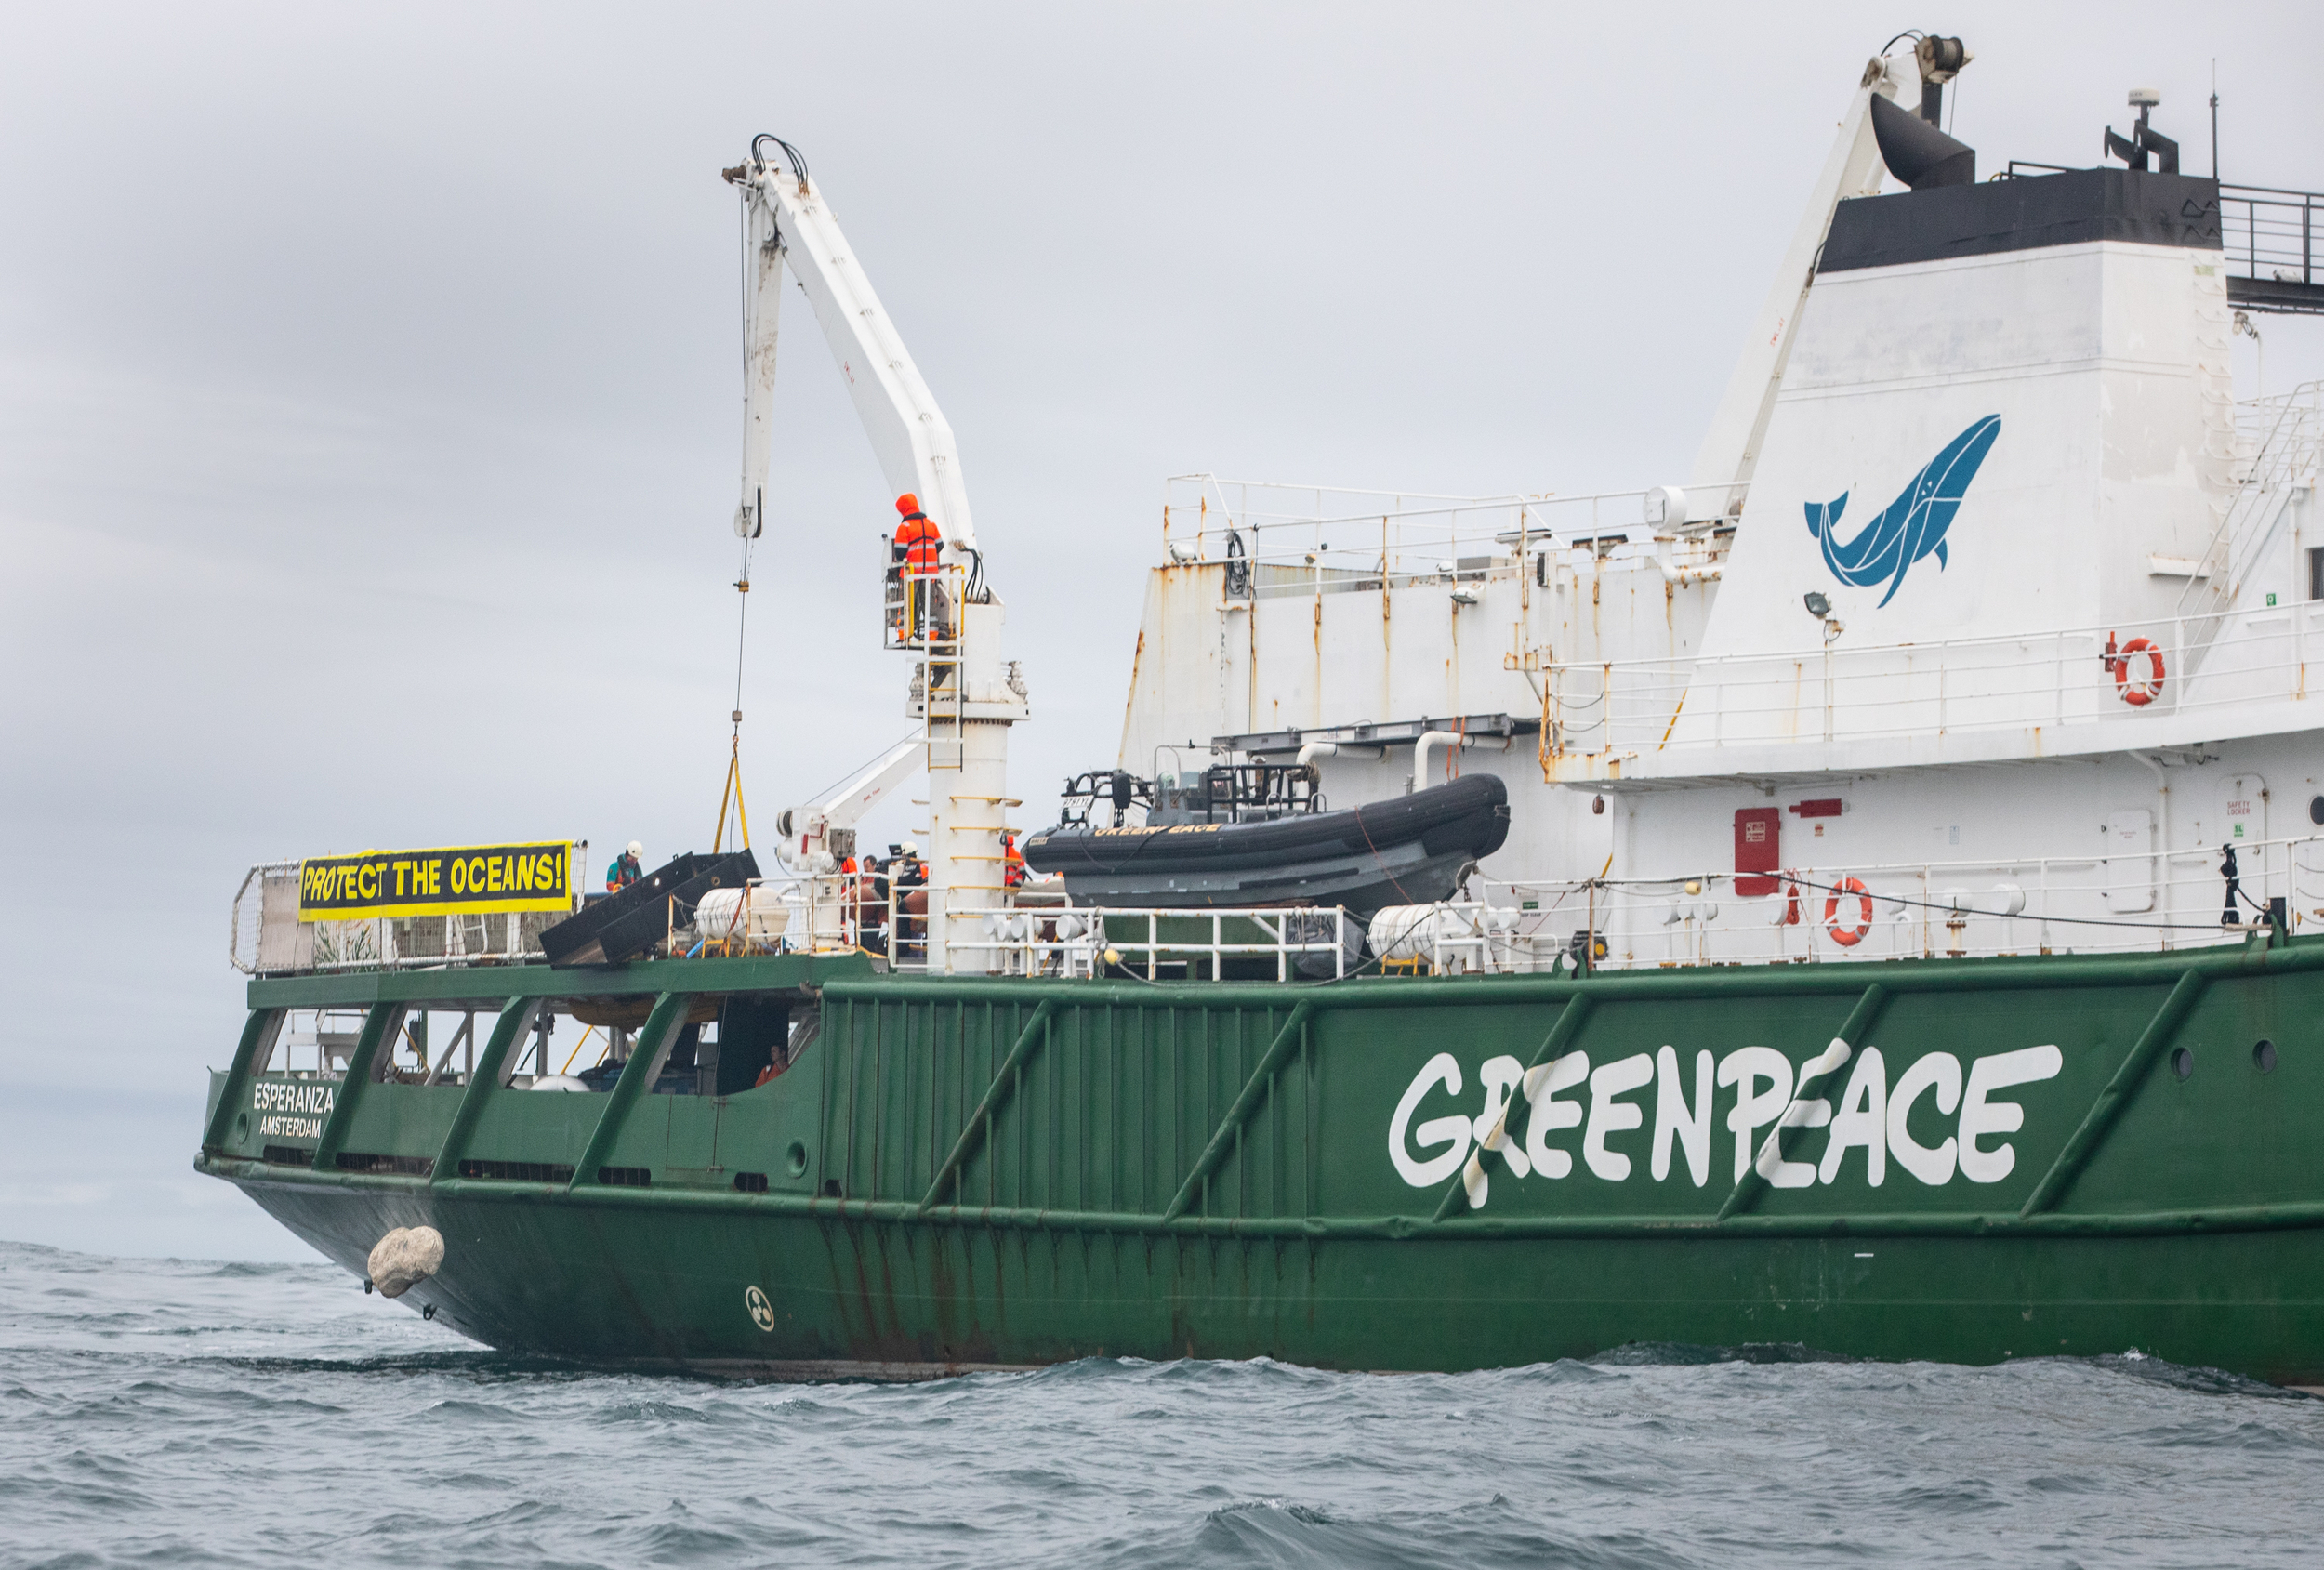 A boulder falls into the North Sea from the Greenpeace ship, Esperanza